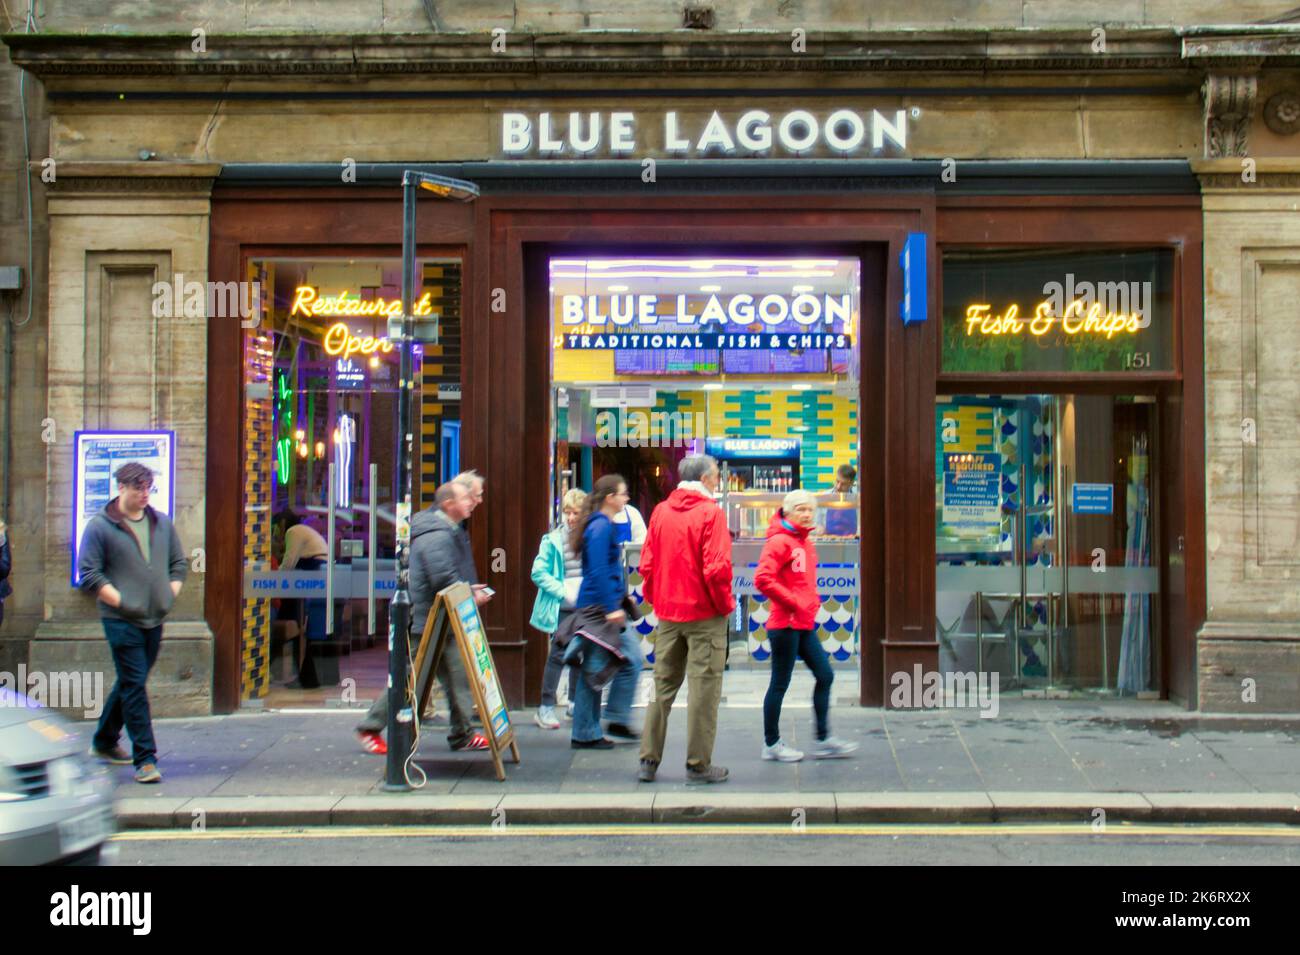 Blue Lagoon Fish & Chips 151 Queen Street Glasgow, Scozia, Regno Unito Foto Stock